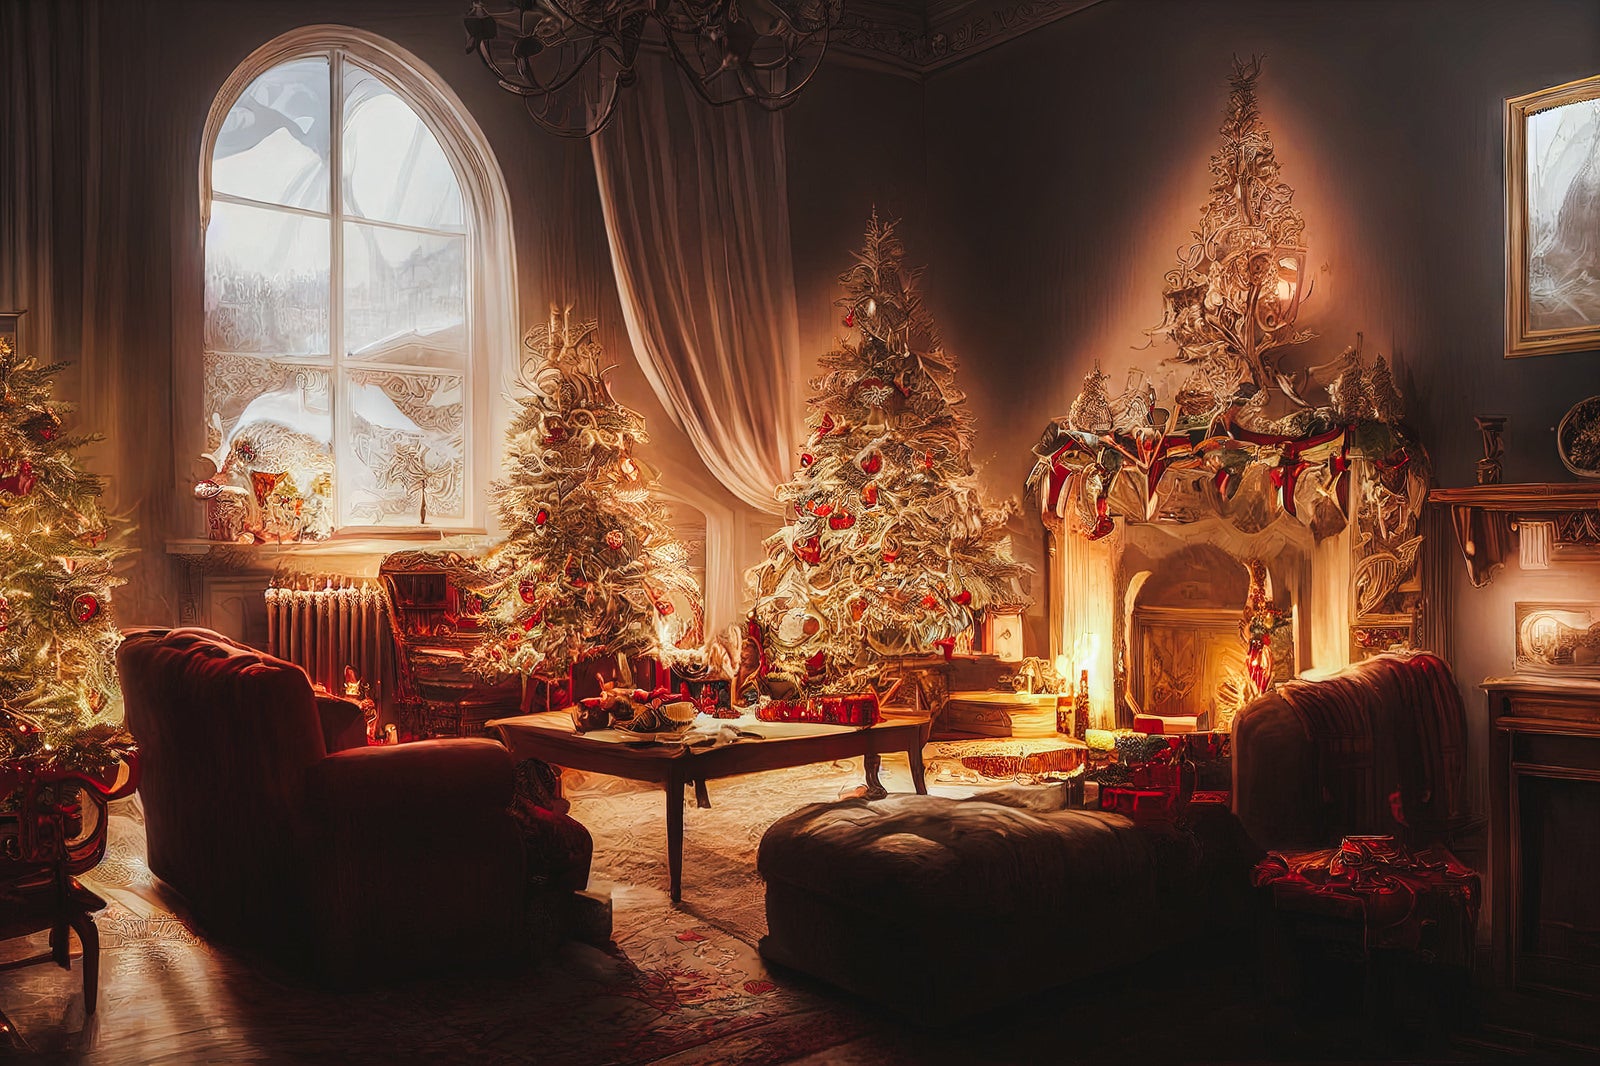 「装飾したクリスマスツリーに囲まれた暖炉のある部屋」の写真